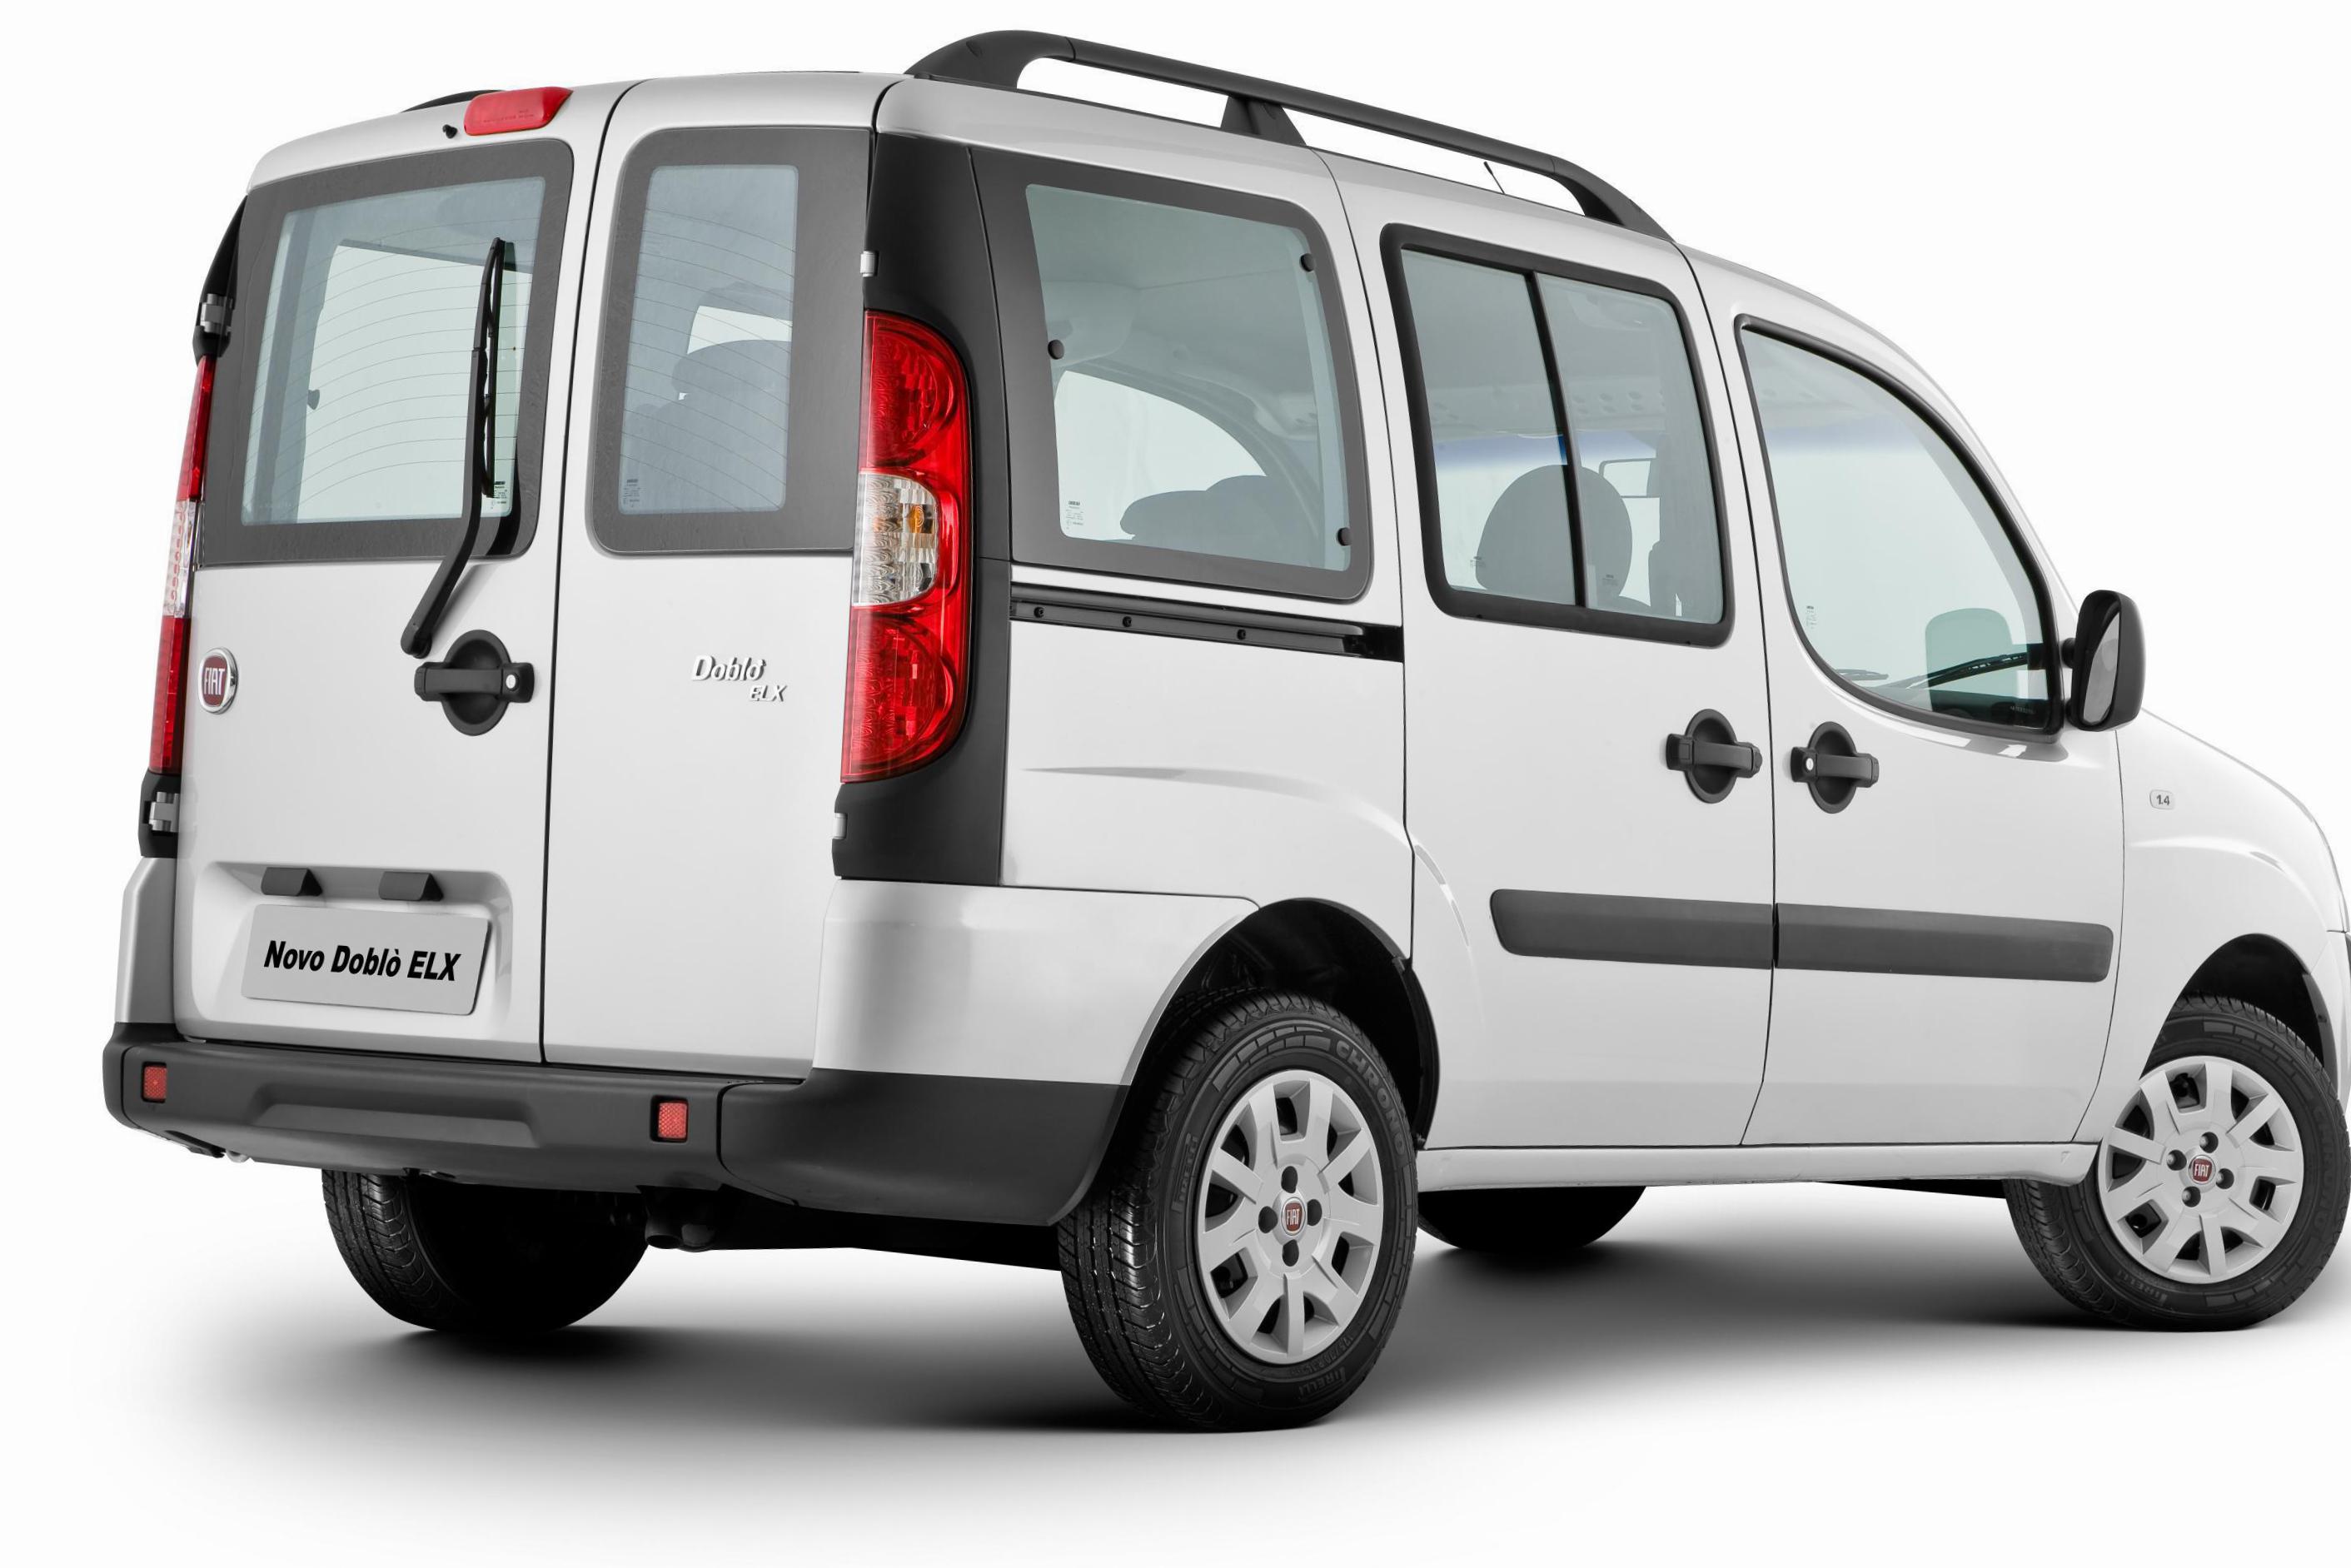 Fiat Doblo lease hatchback